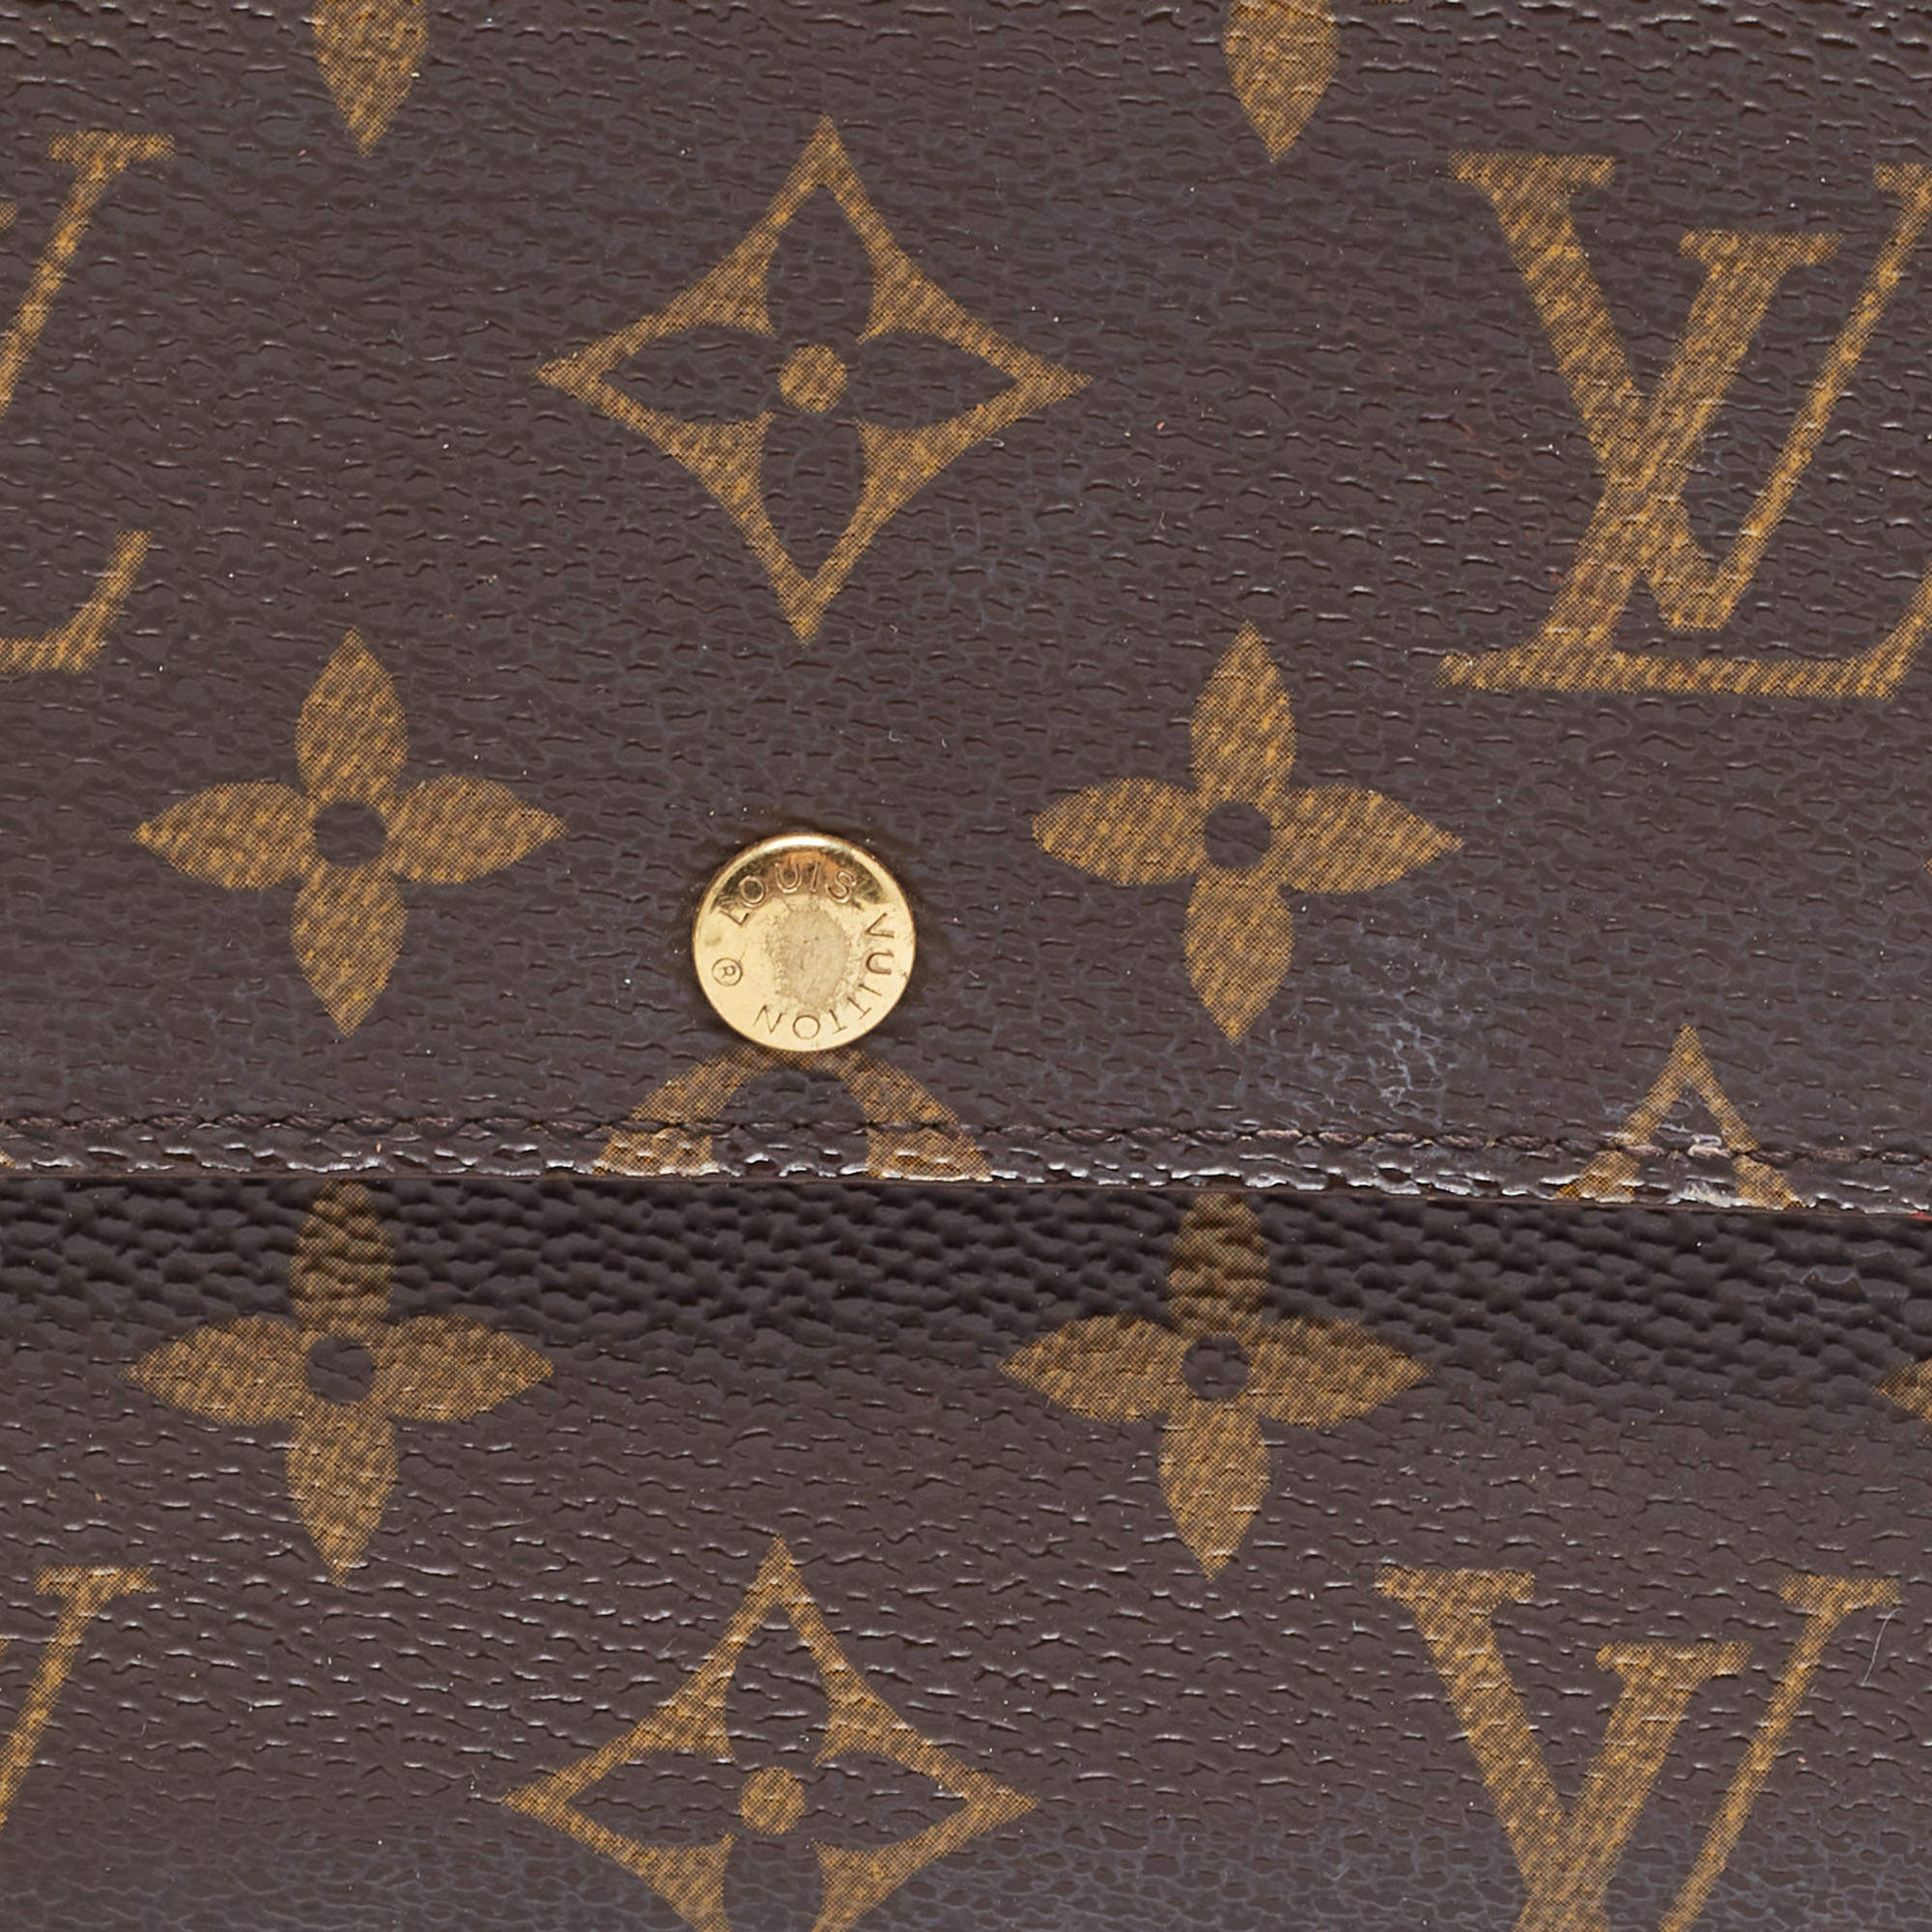 Louis Vuitton Sarah wallet MONOGRAM w/ 10 cc slot SP3077